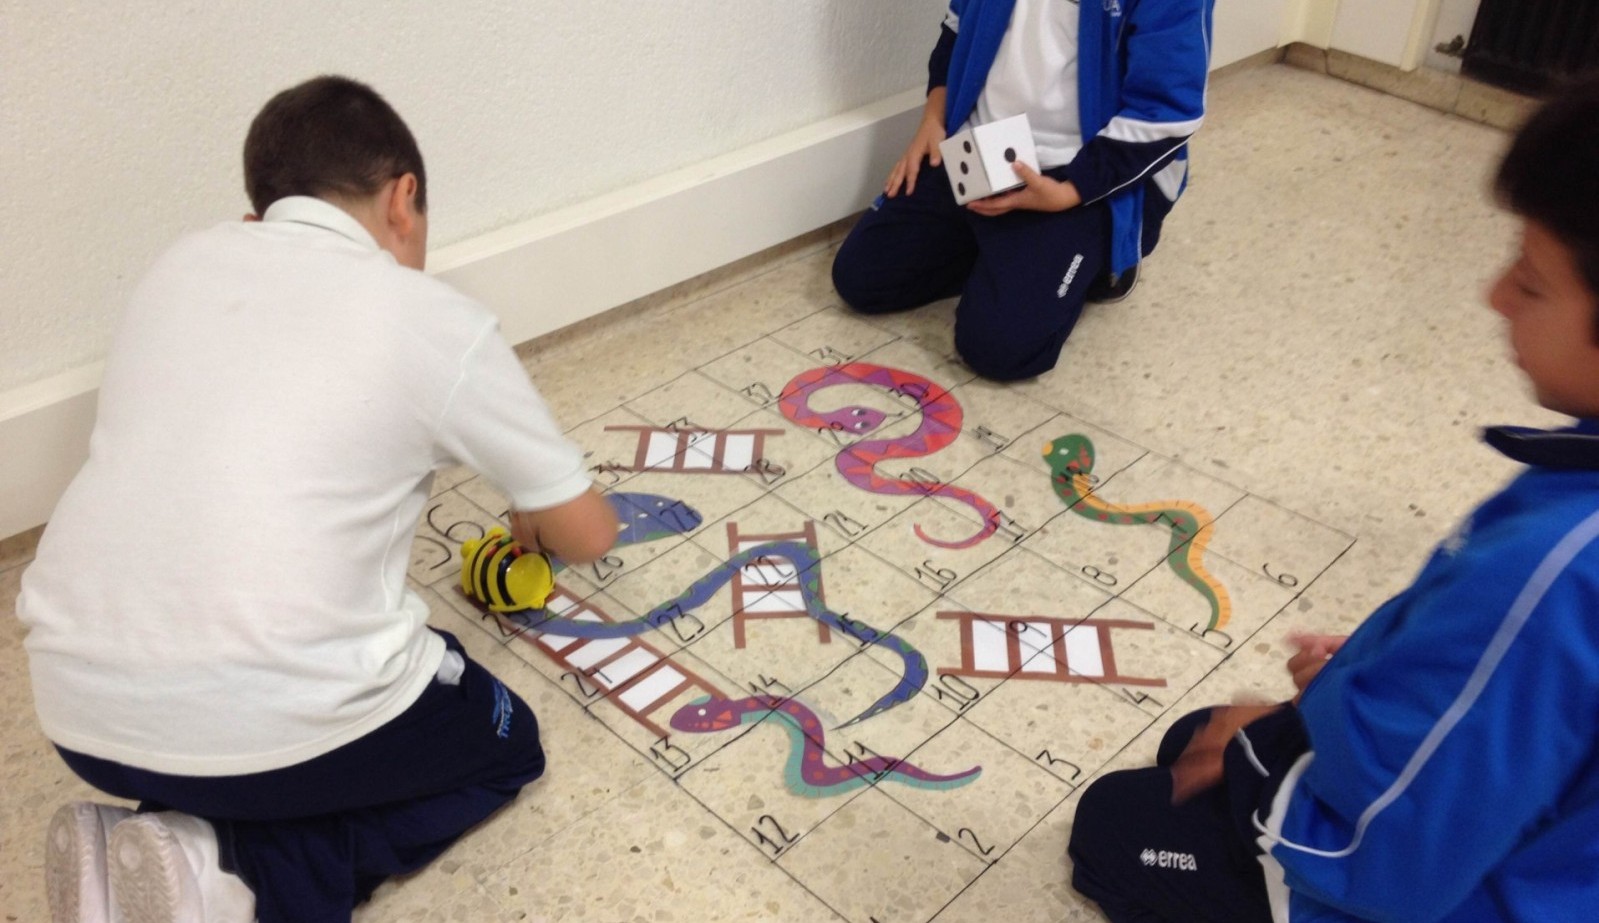 Niños juegan en el suelo a un juego de mesa con serpientes y escaleras